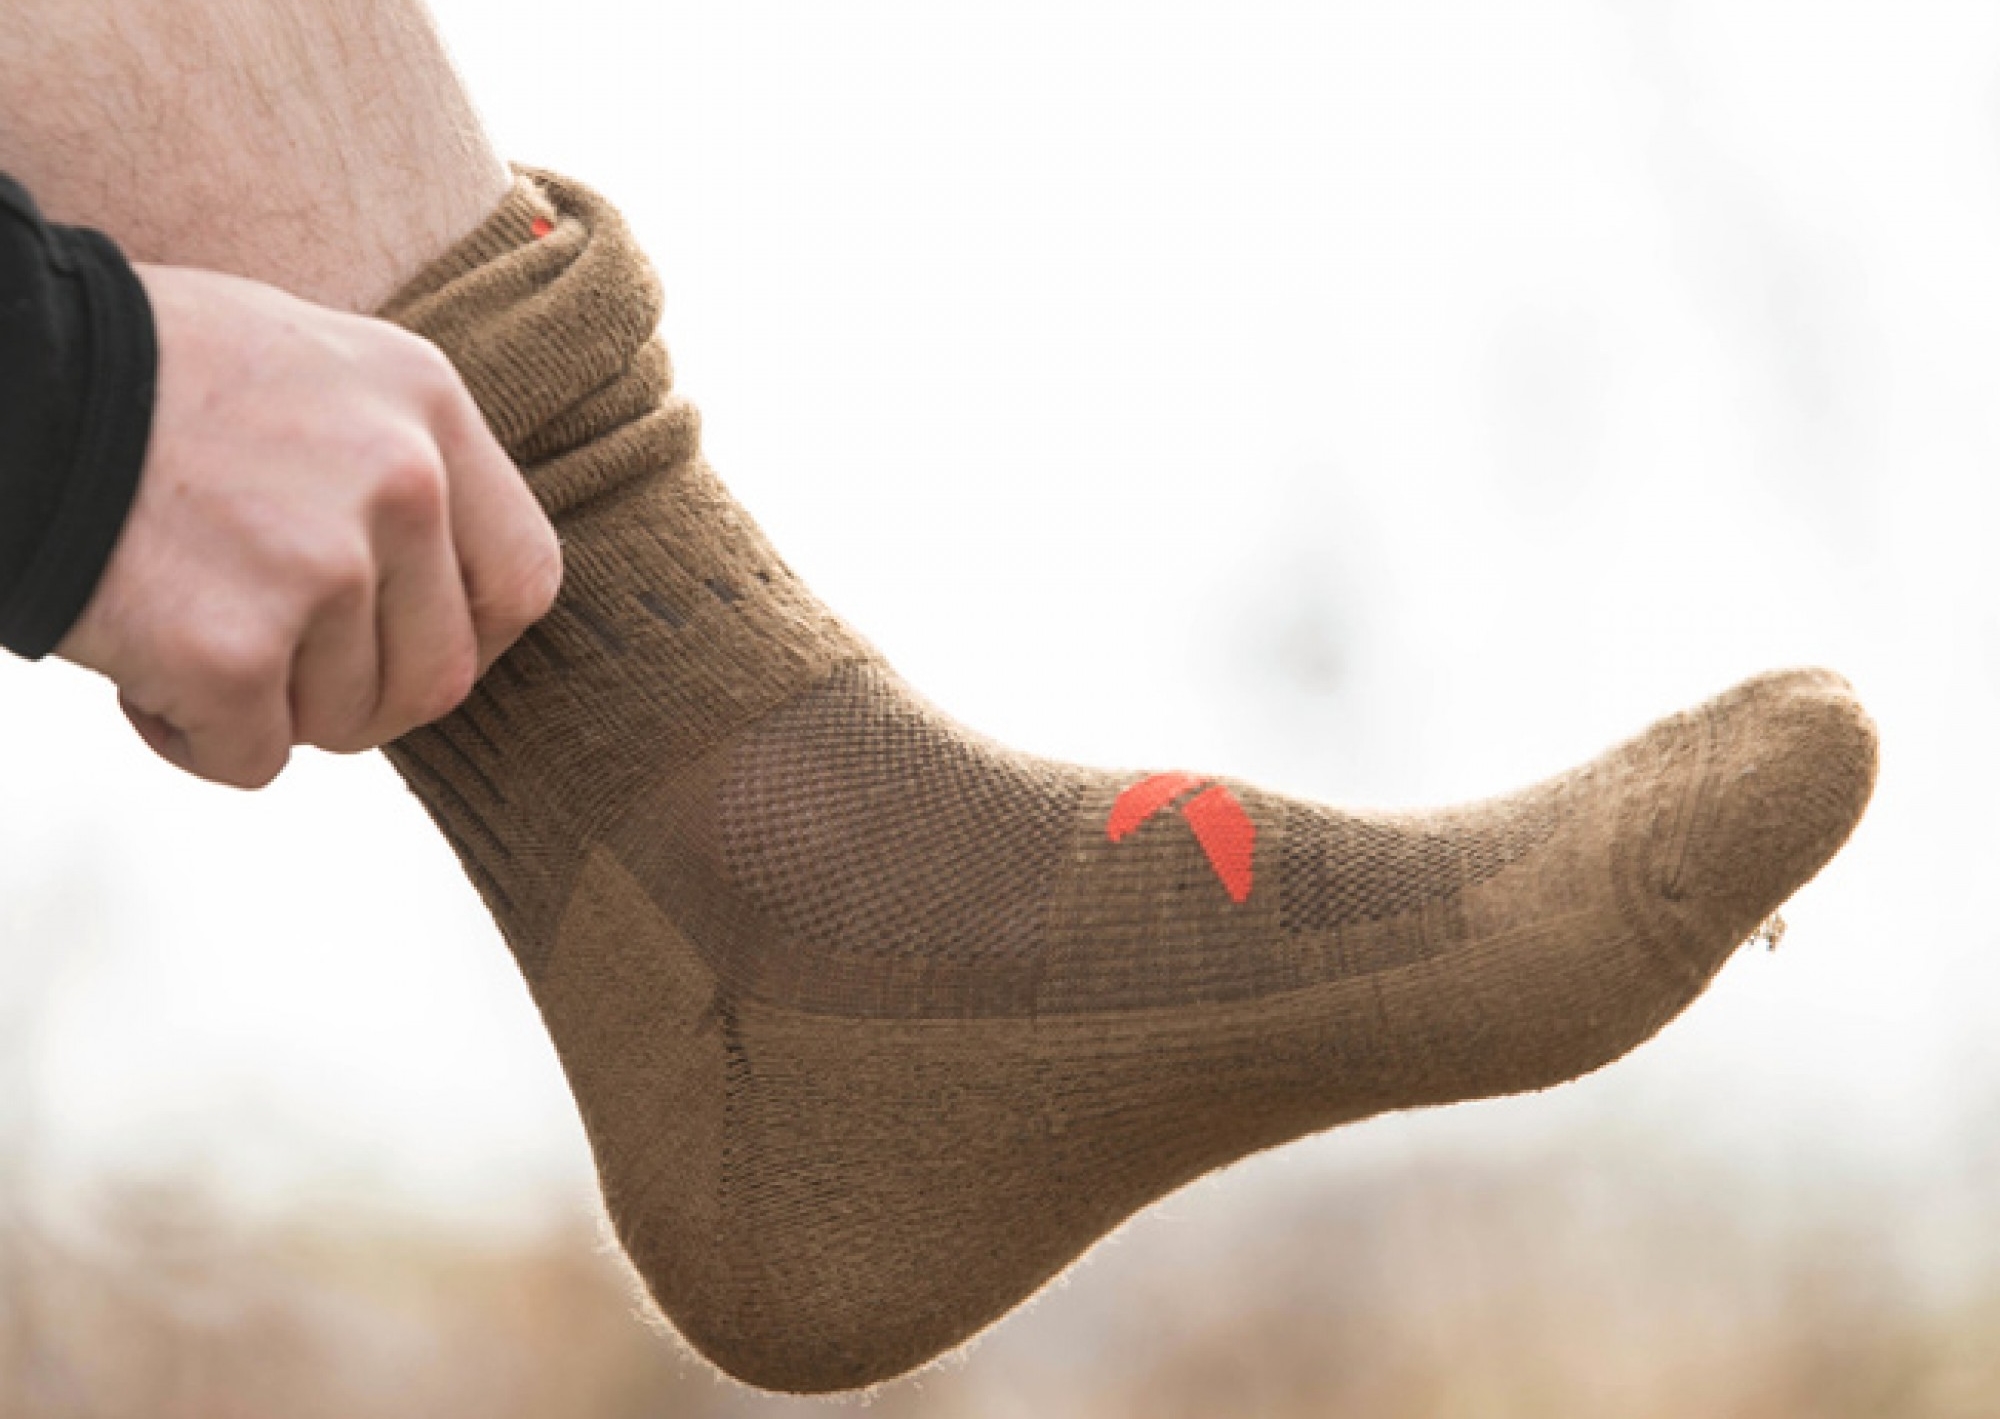 5 tips for picking the best warmest socks for hunting